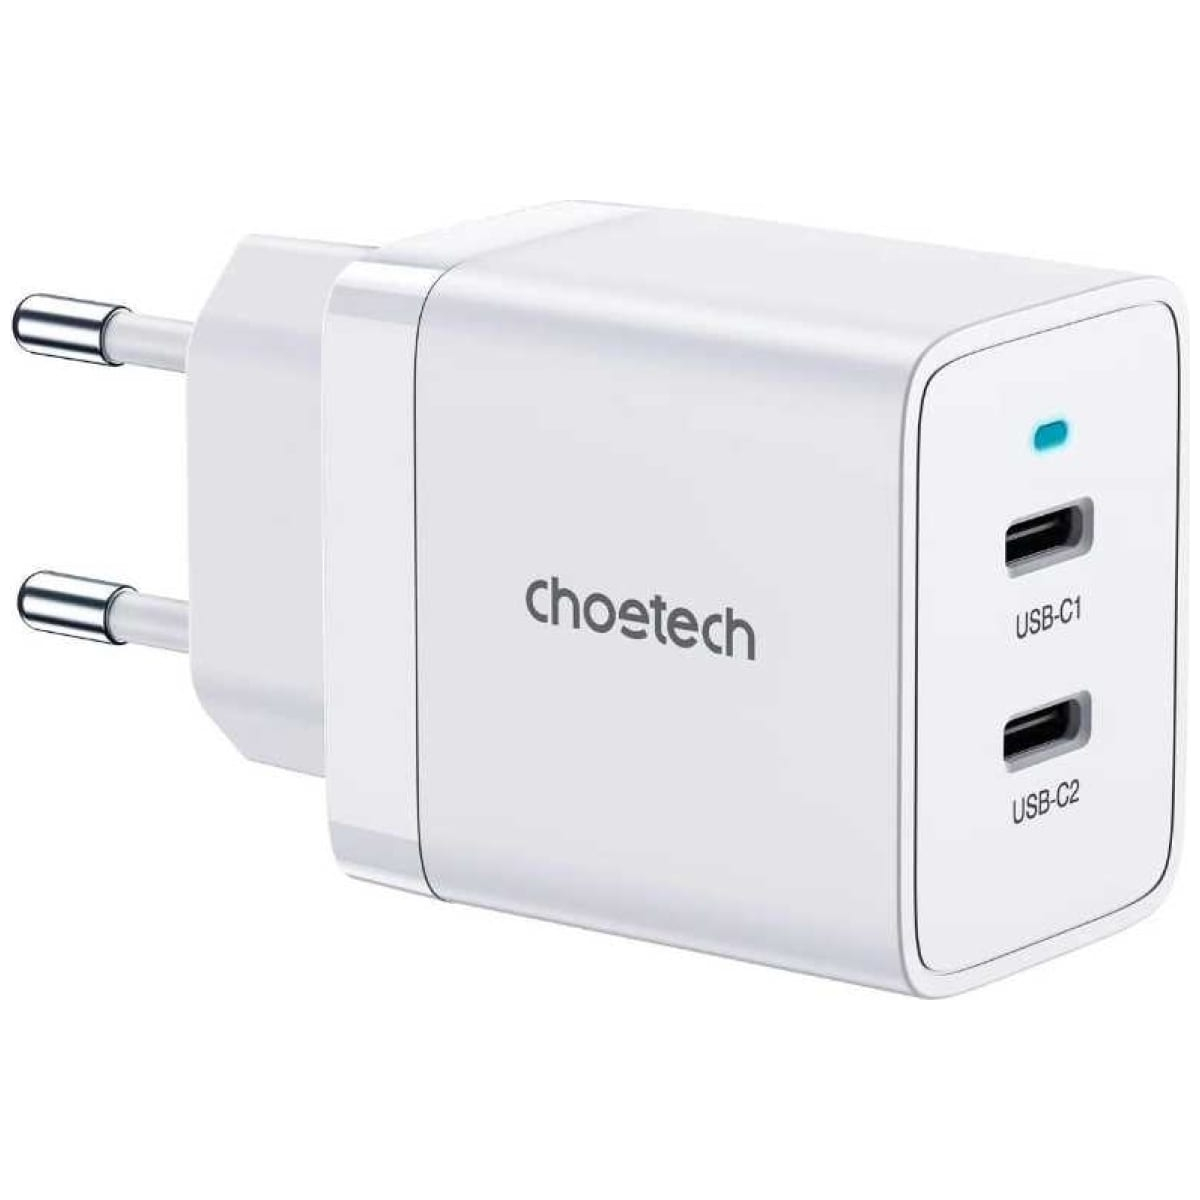 Сетевое зарядное устройство Choetech 40Вт (2xUSB-C) PD/PPS, цвет белый (Q5006) hoco сетевое зарядное устройство hoco n14 type c pd 20 вт 3 а белый